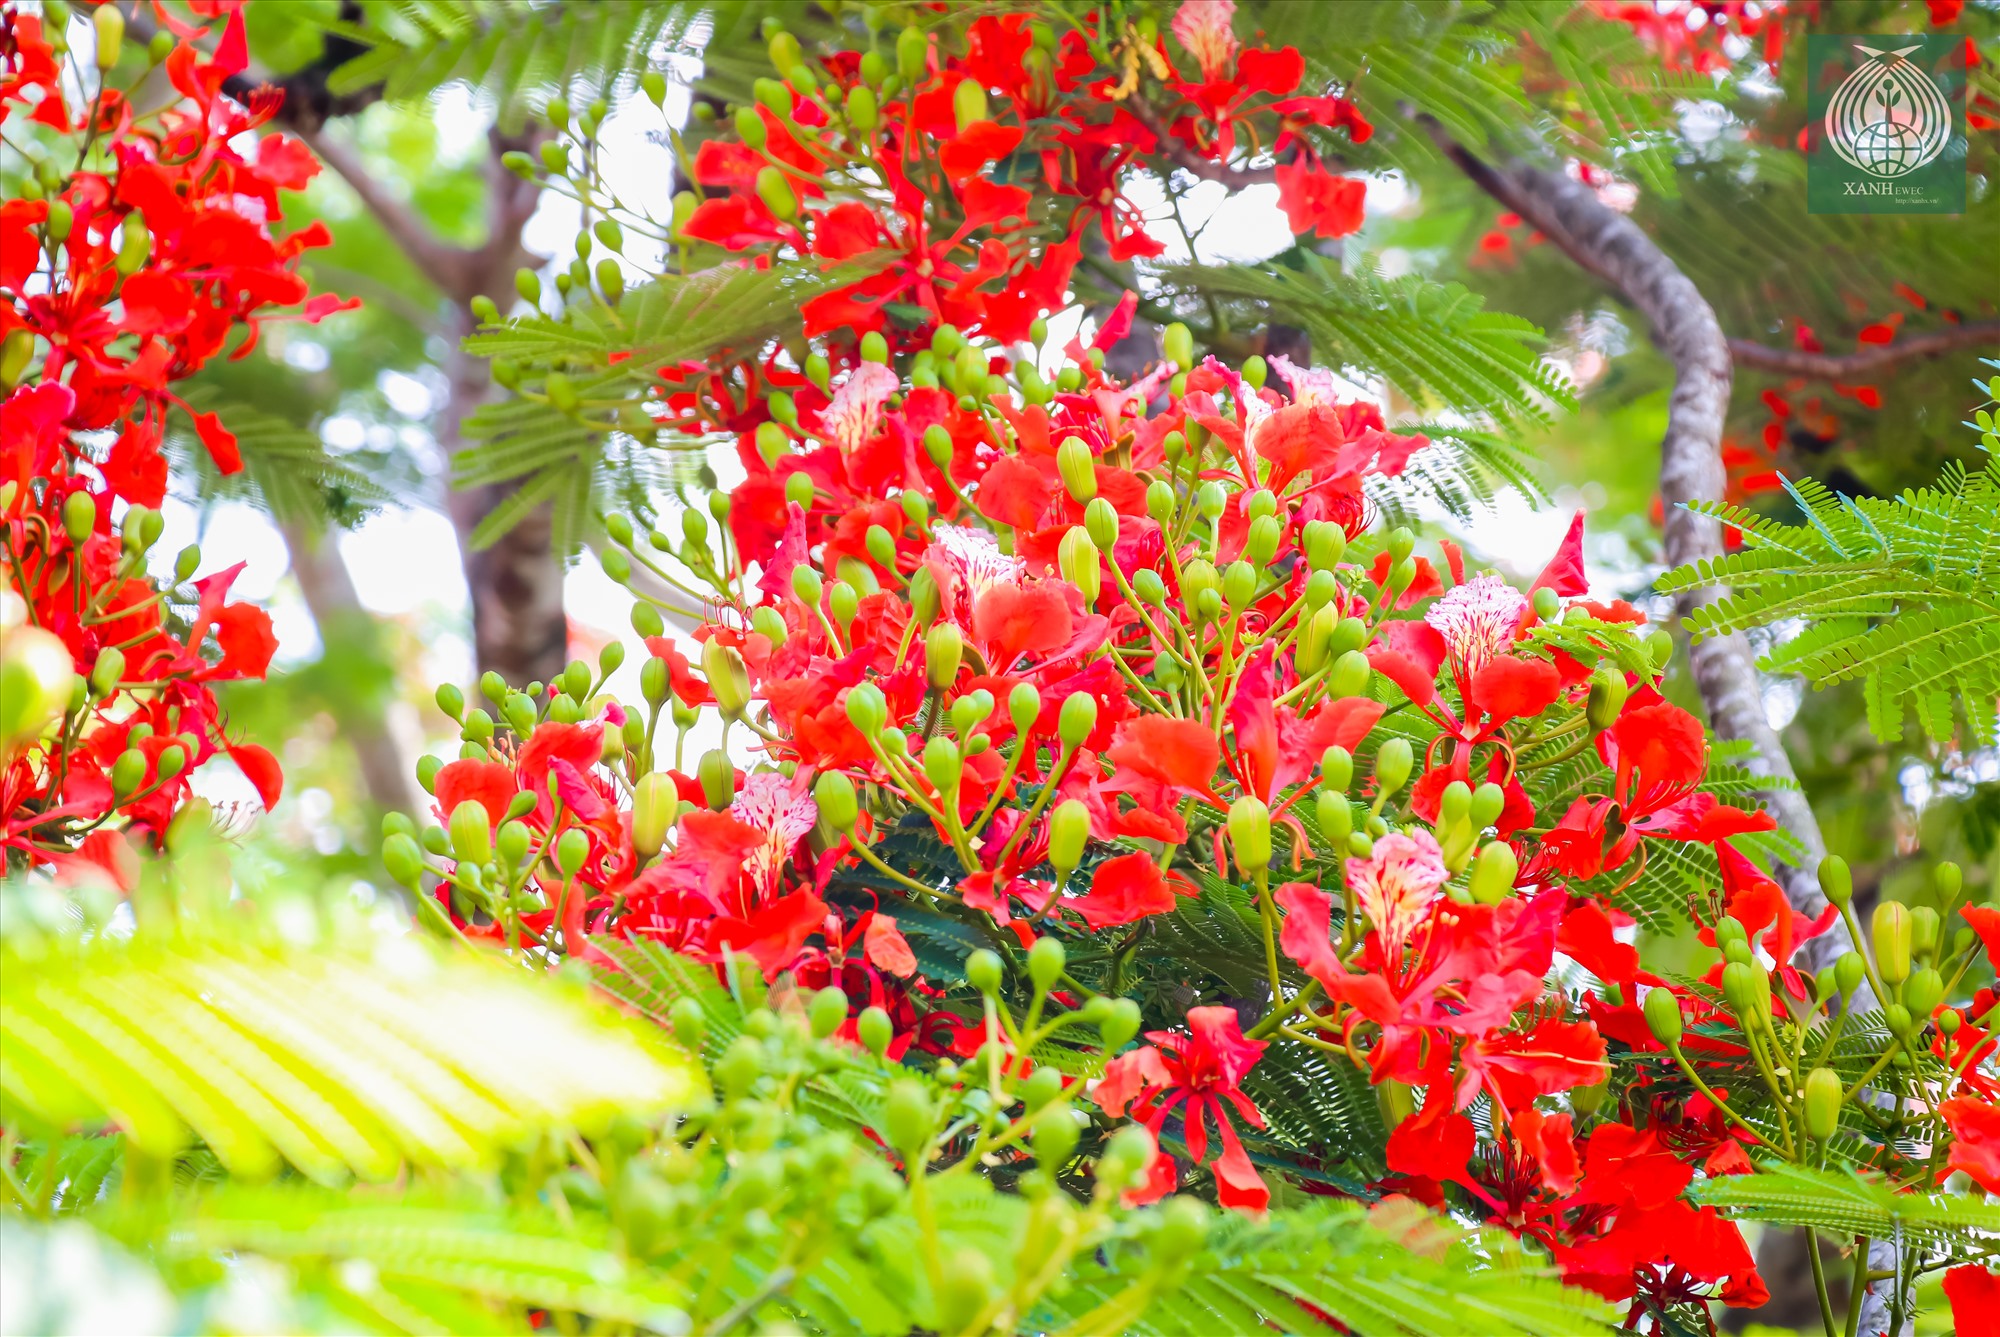 Với sắc đỏ rực rỡ, hoa mọc thành chùm dày đặc, chóng tàn, phượng đỏ thường khiến người ta liên tưởng đến hình ảnh ngọn lửa.